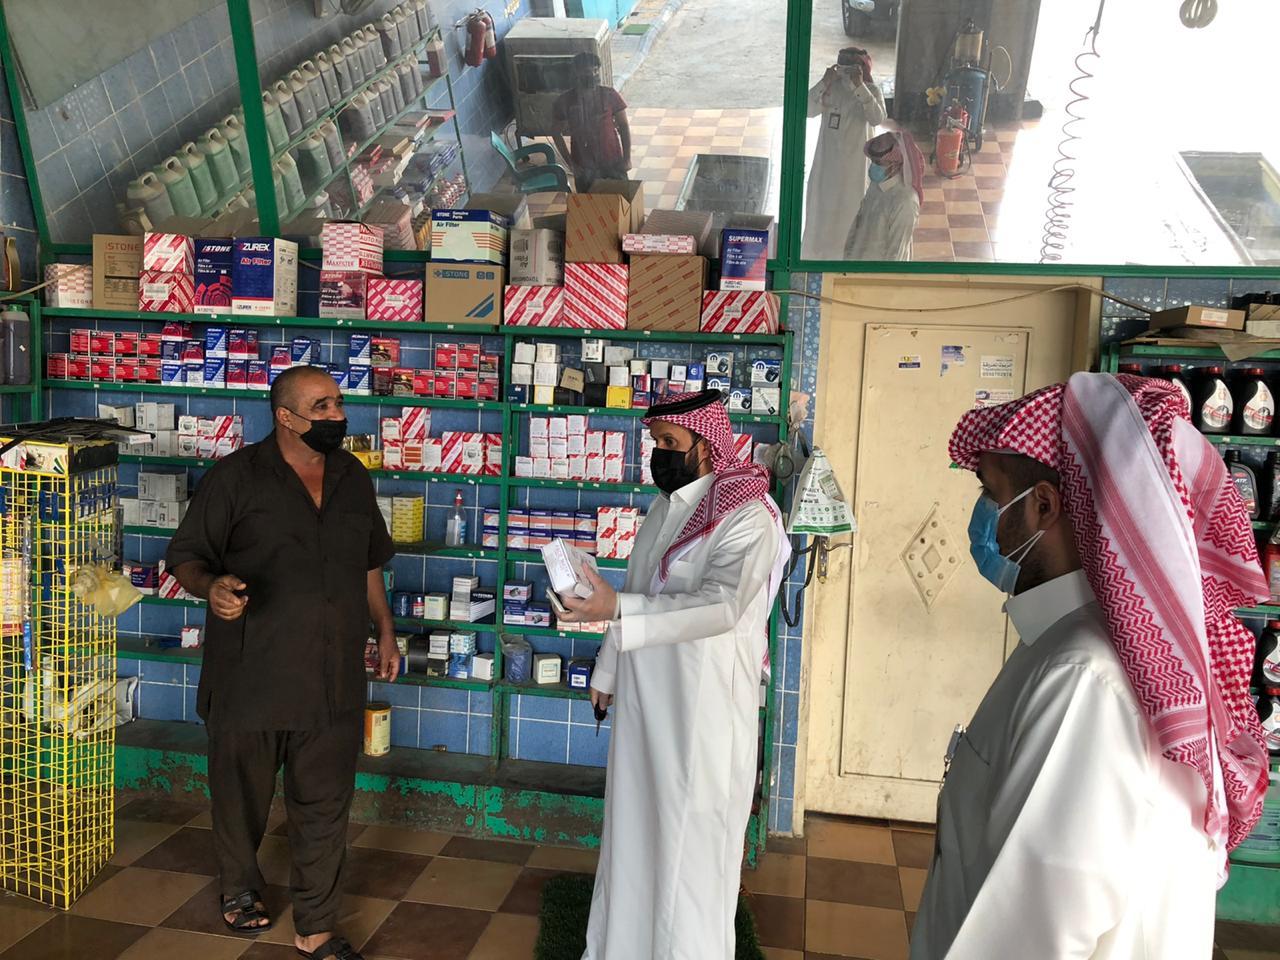 عمل الرياض ينفذ 40 زيارة تفتيشية لمتابعة تطبيق الاحترازات